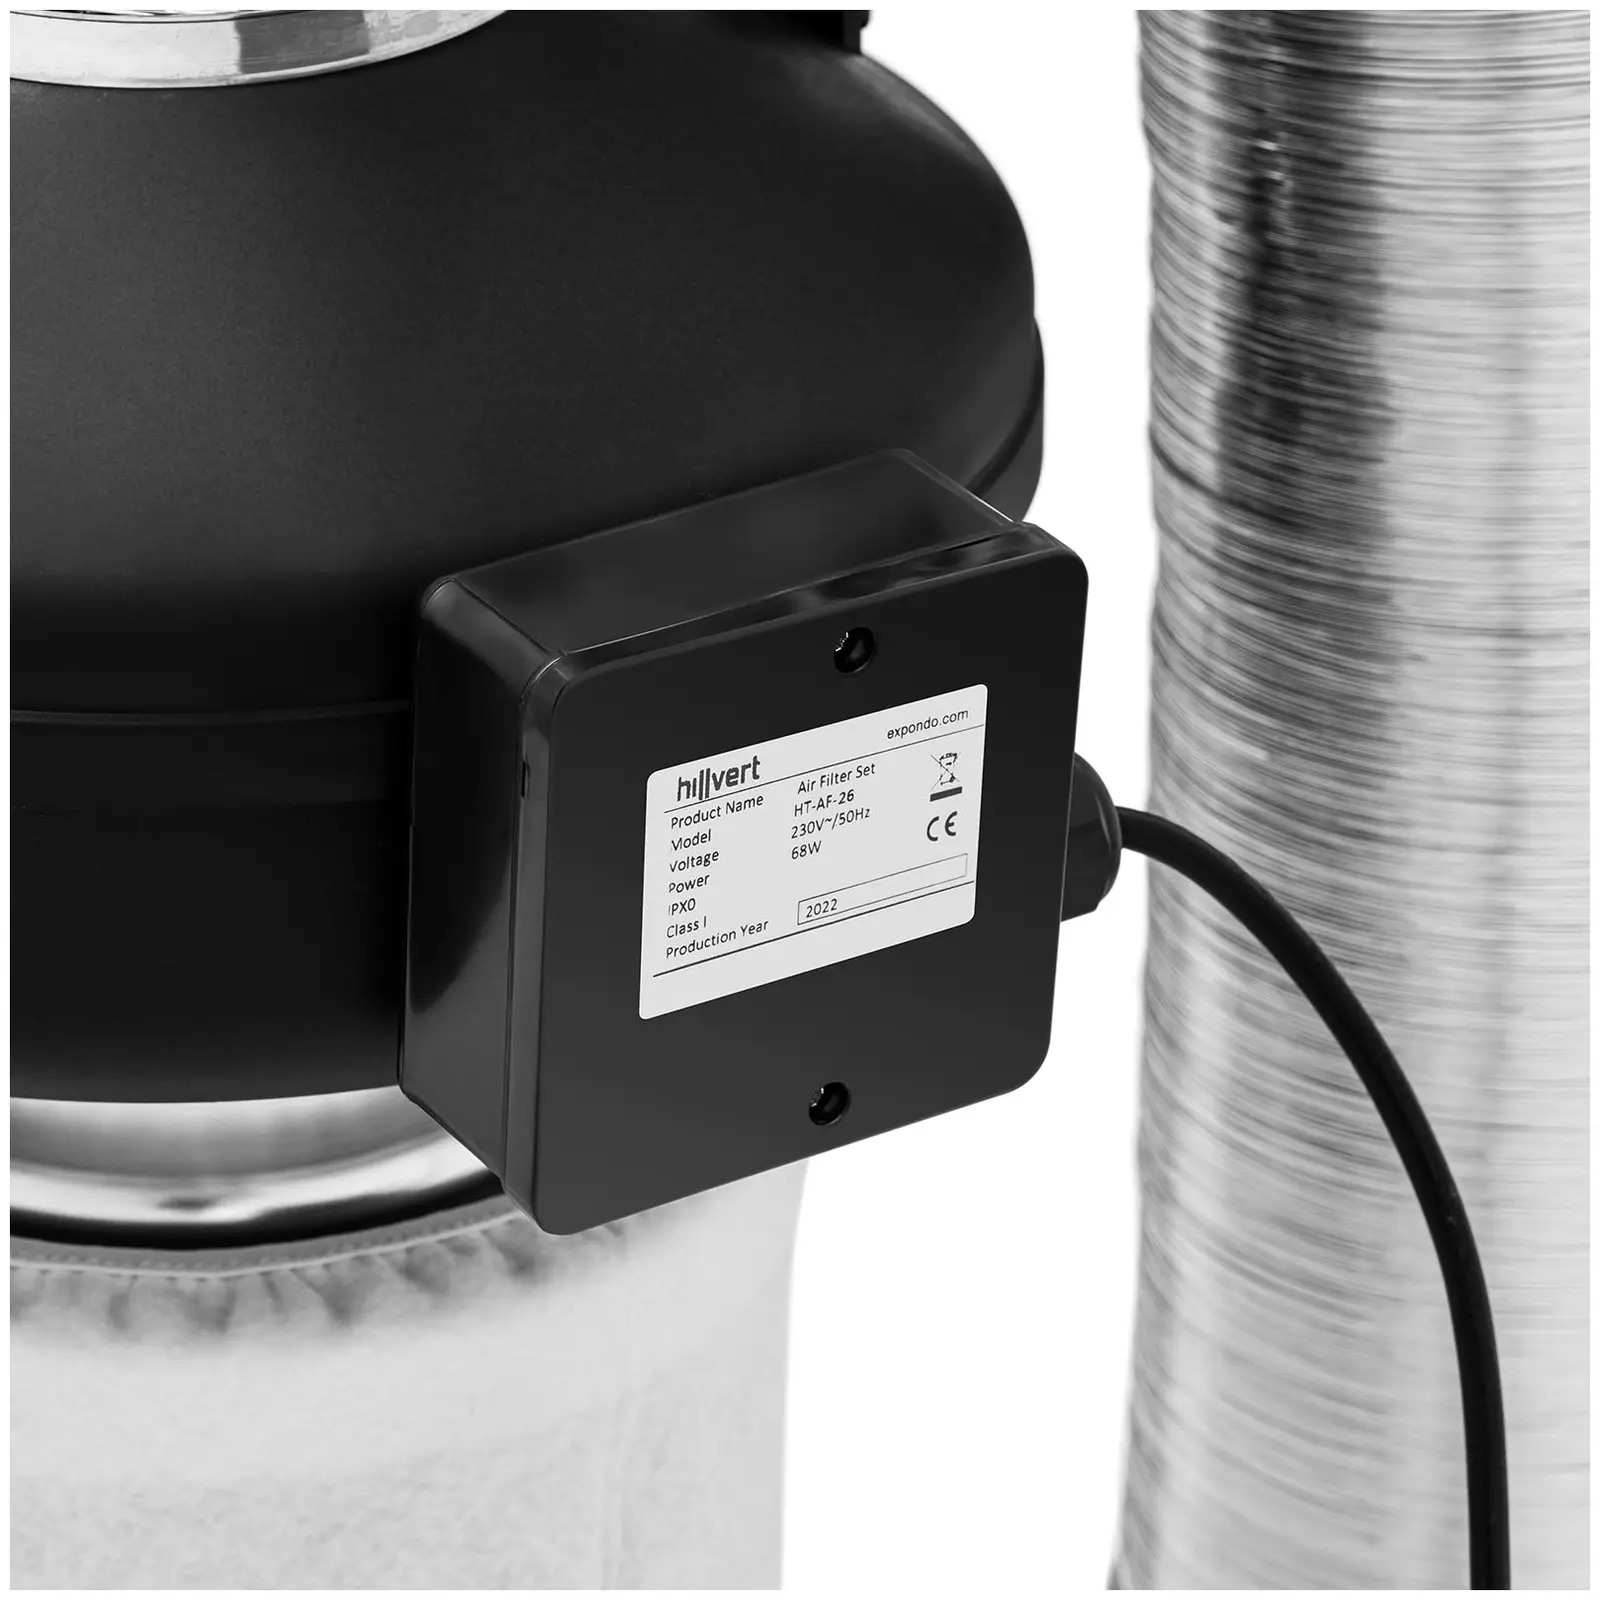 Sada pro odsávání vzduchu - filtr s aktivním uhlím / potrubní ventilátor / hadice pro odsávání vzduchu - 382.2 m³/h - Ø 125 mm výstupní otvor